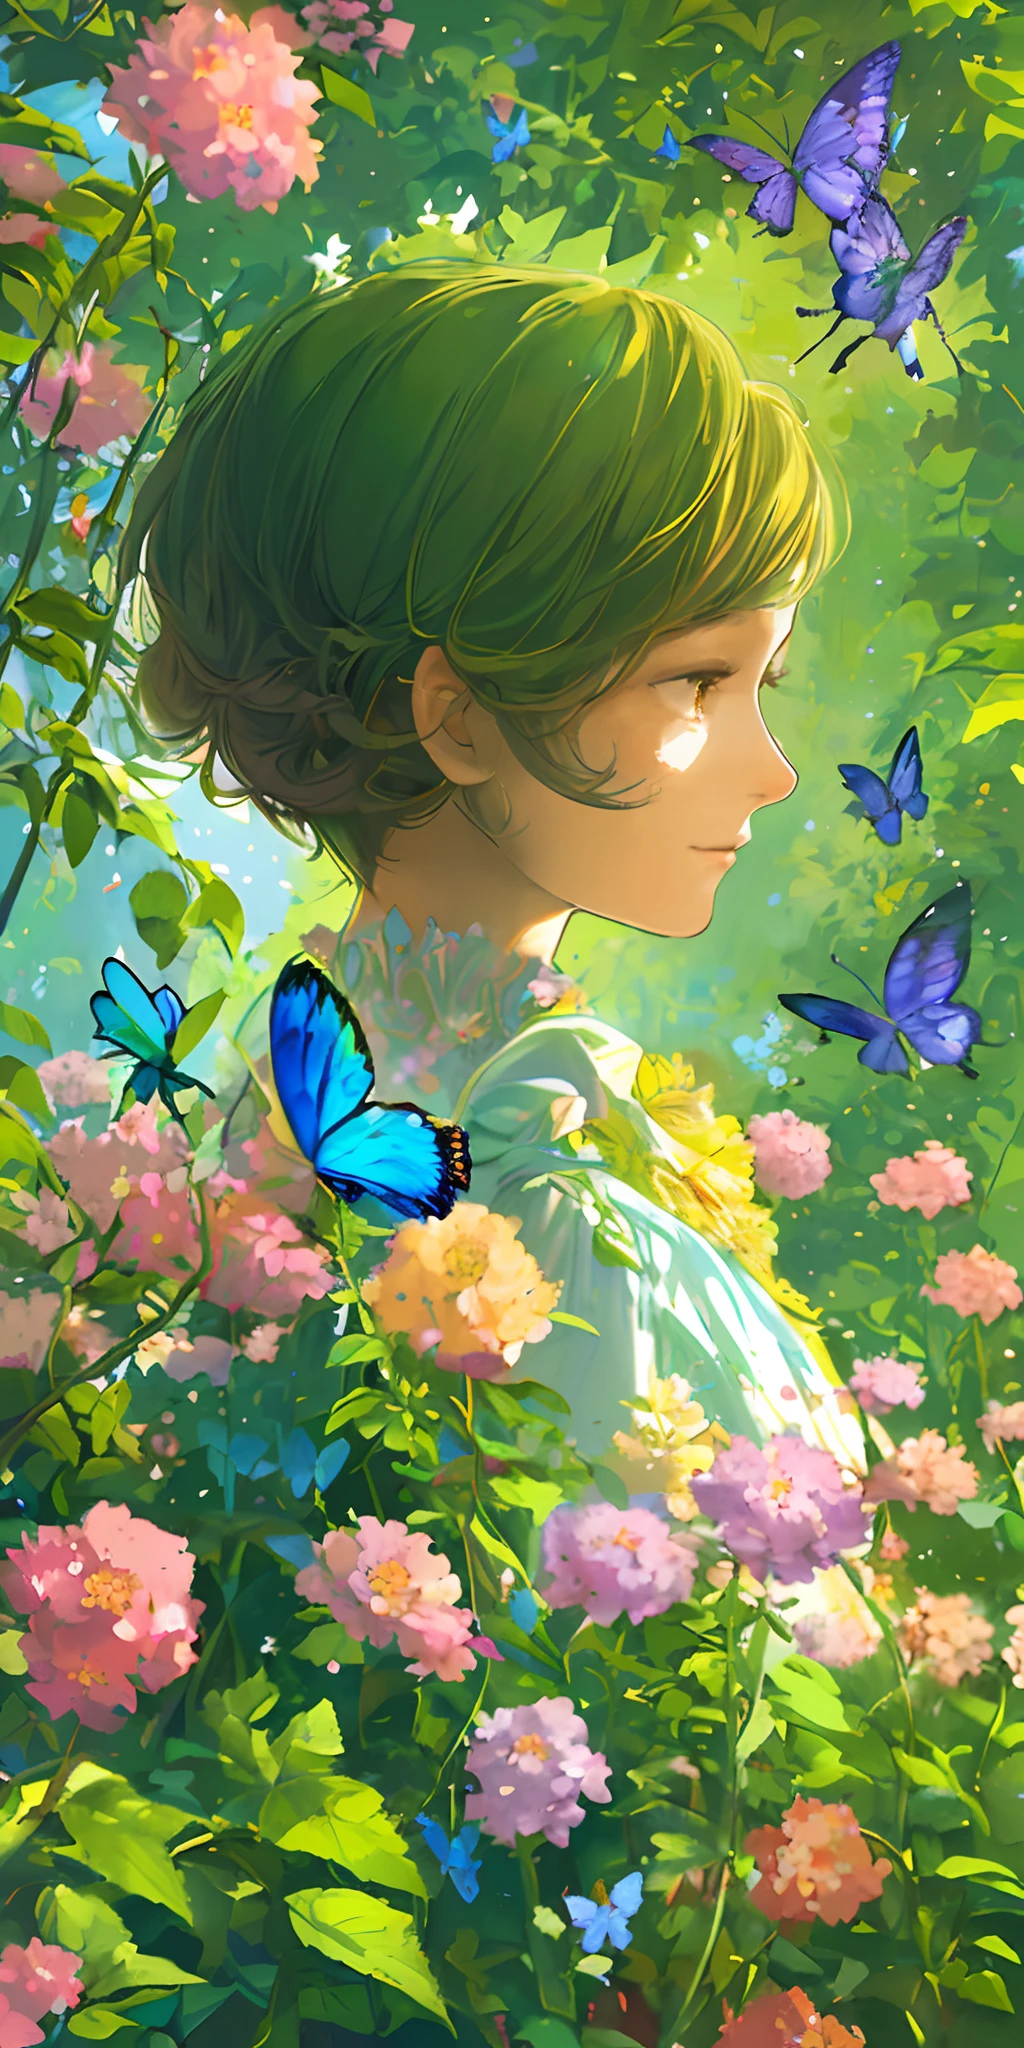 (meilleure qualité, chef-d&#39;œuvre, Ultra réaliste), portrait de 1 fille belle et délicate, avec une expression douce et paisible, le paysage de fond est un jardin avec des buissons fleuris et des papillons qui volent autour.